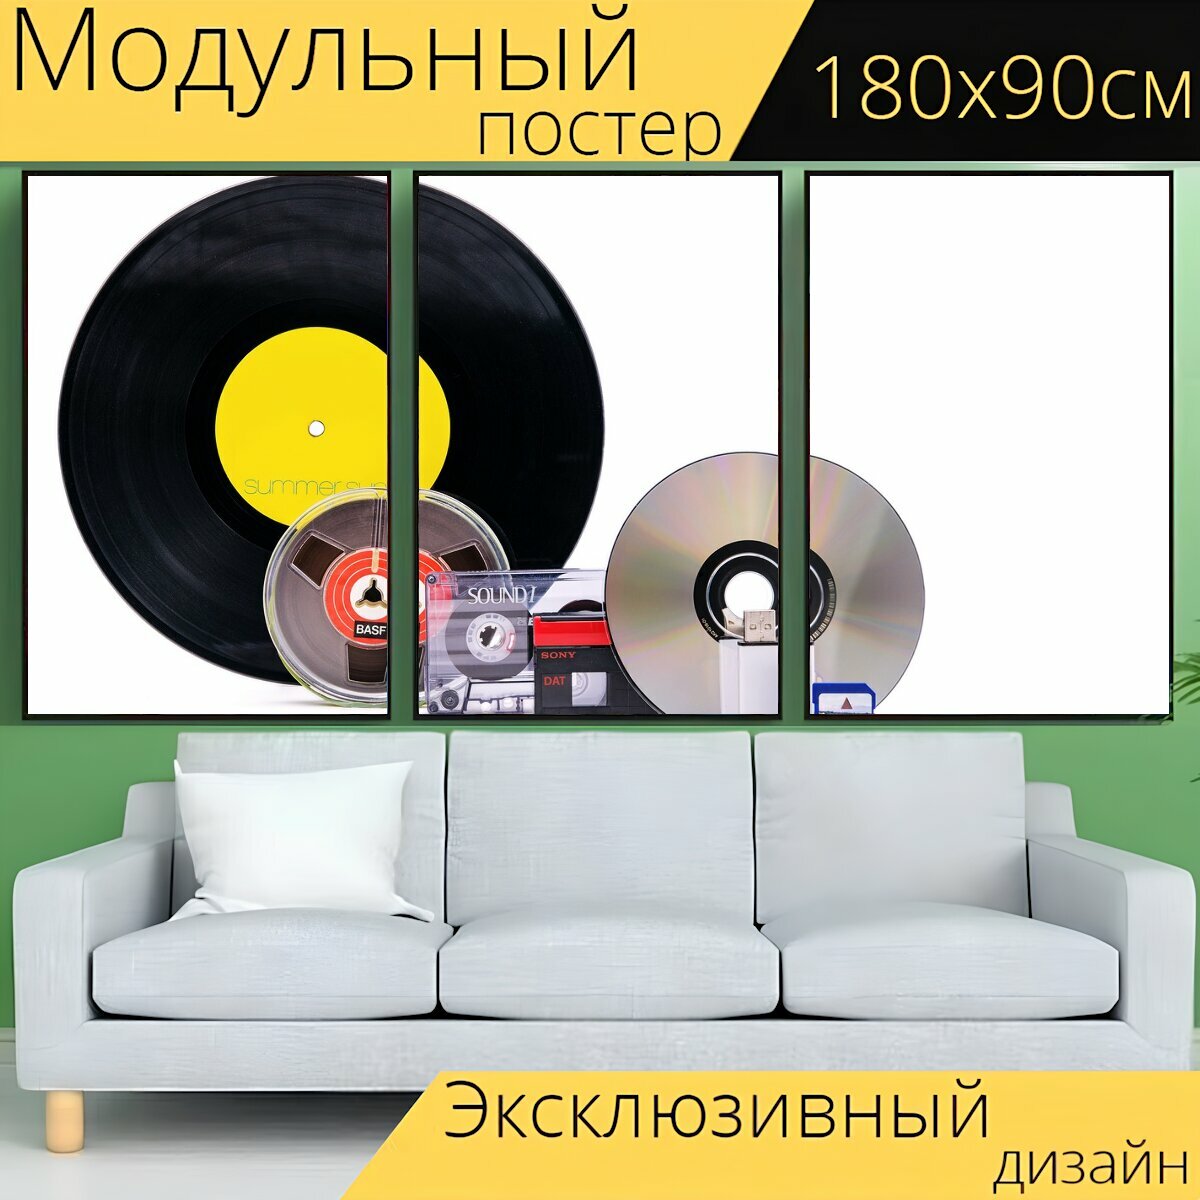 Модульный постер "Кассета, винил, компакт диск" 180 x 90 см. для интерьера